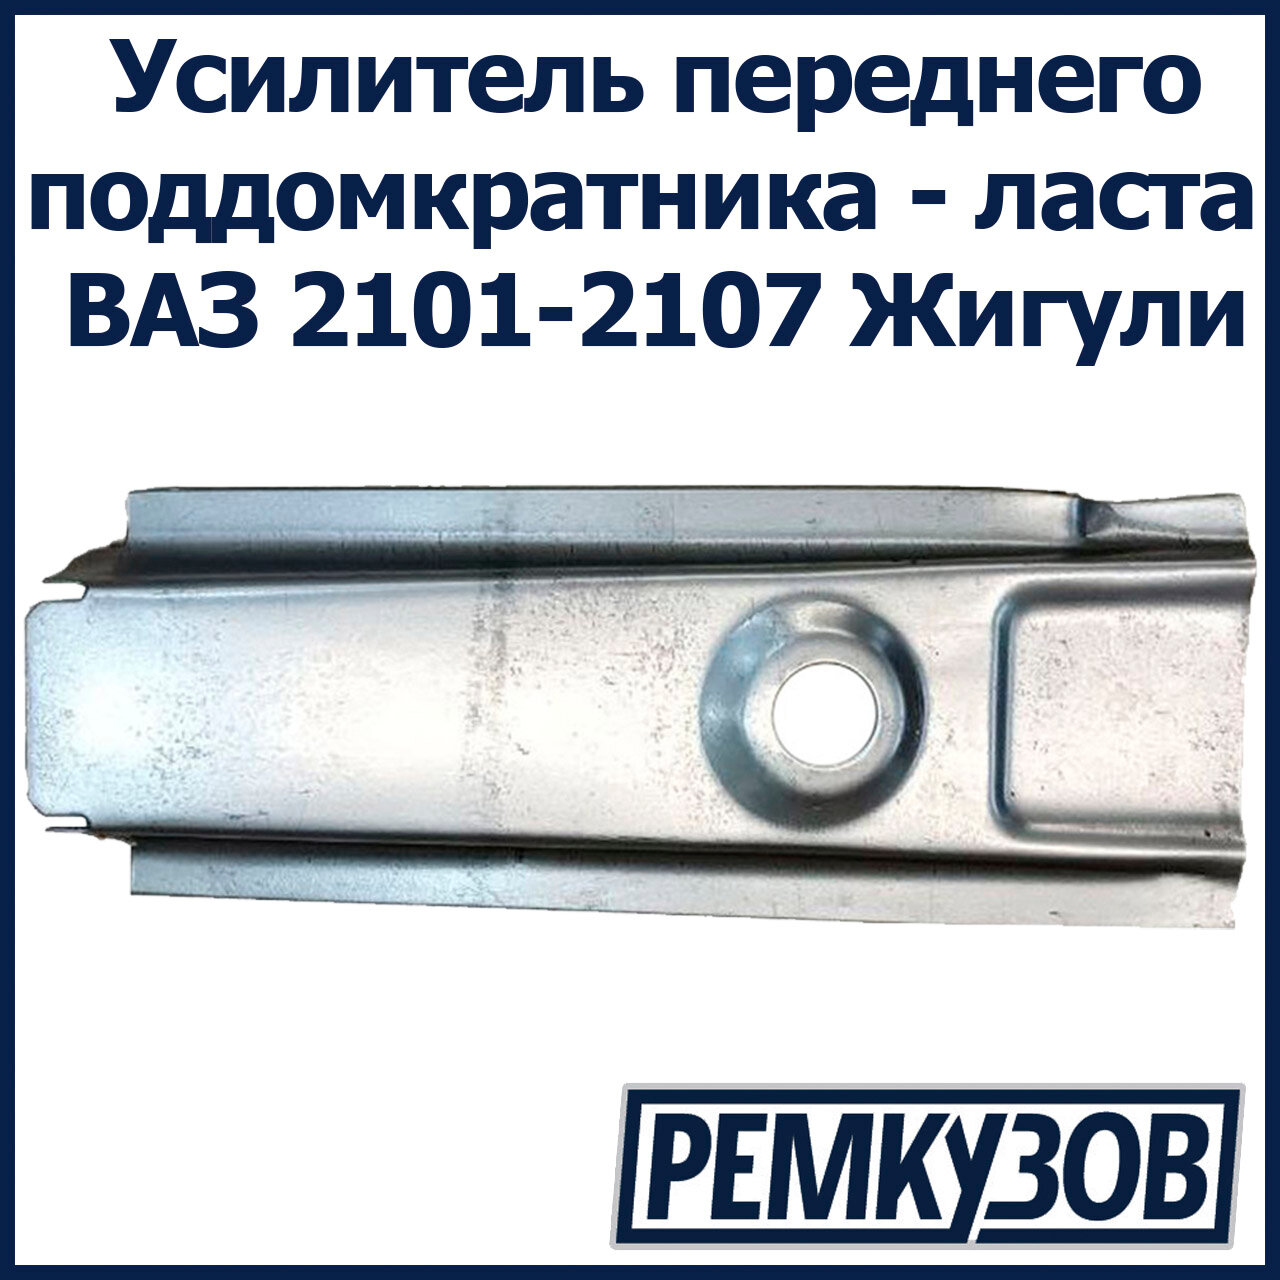 Усилитель переднего поддомкратника - ласта ВАЗ 2101-2107 Жигули